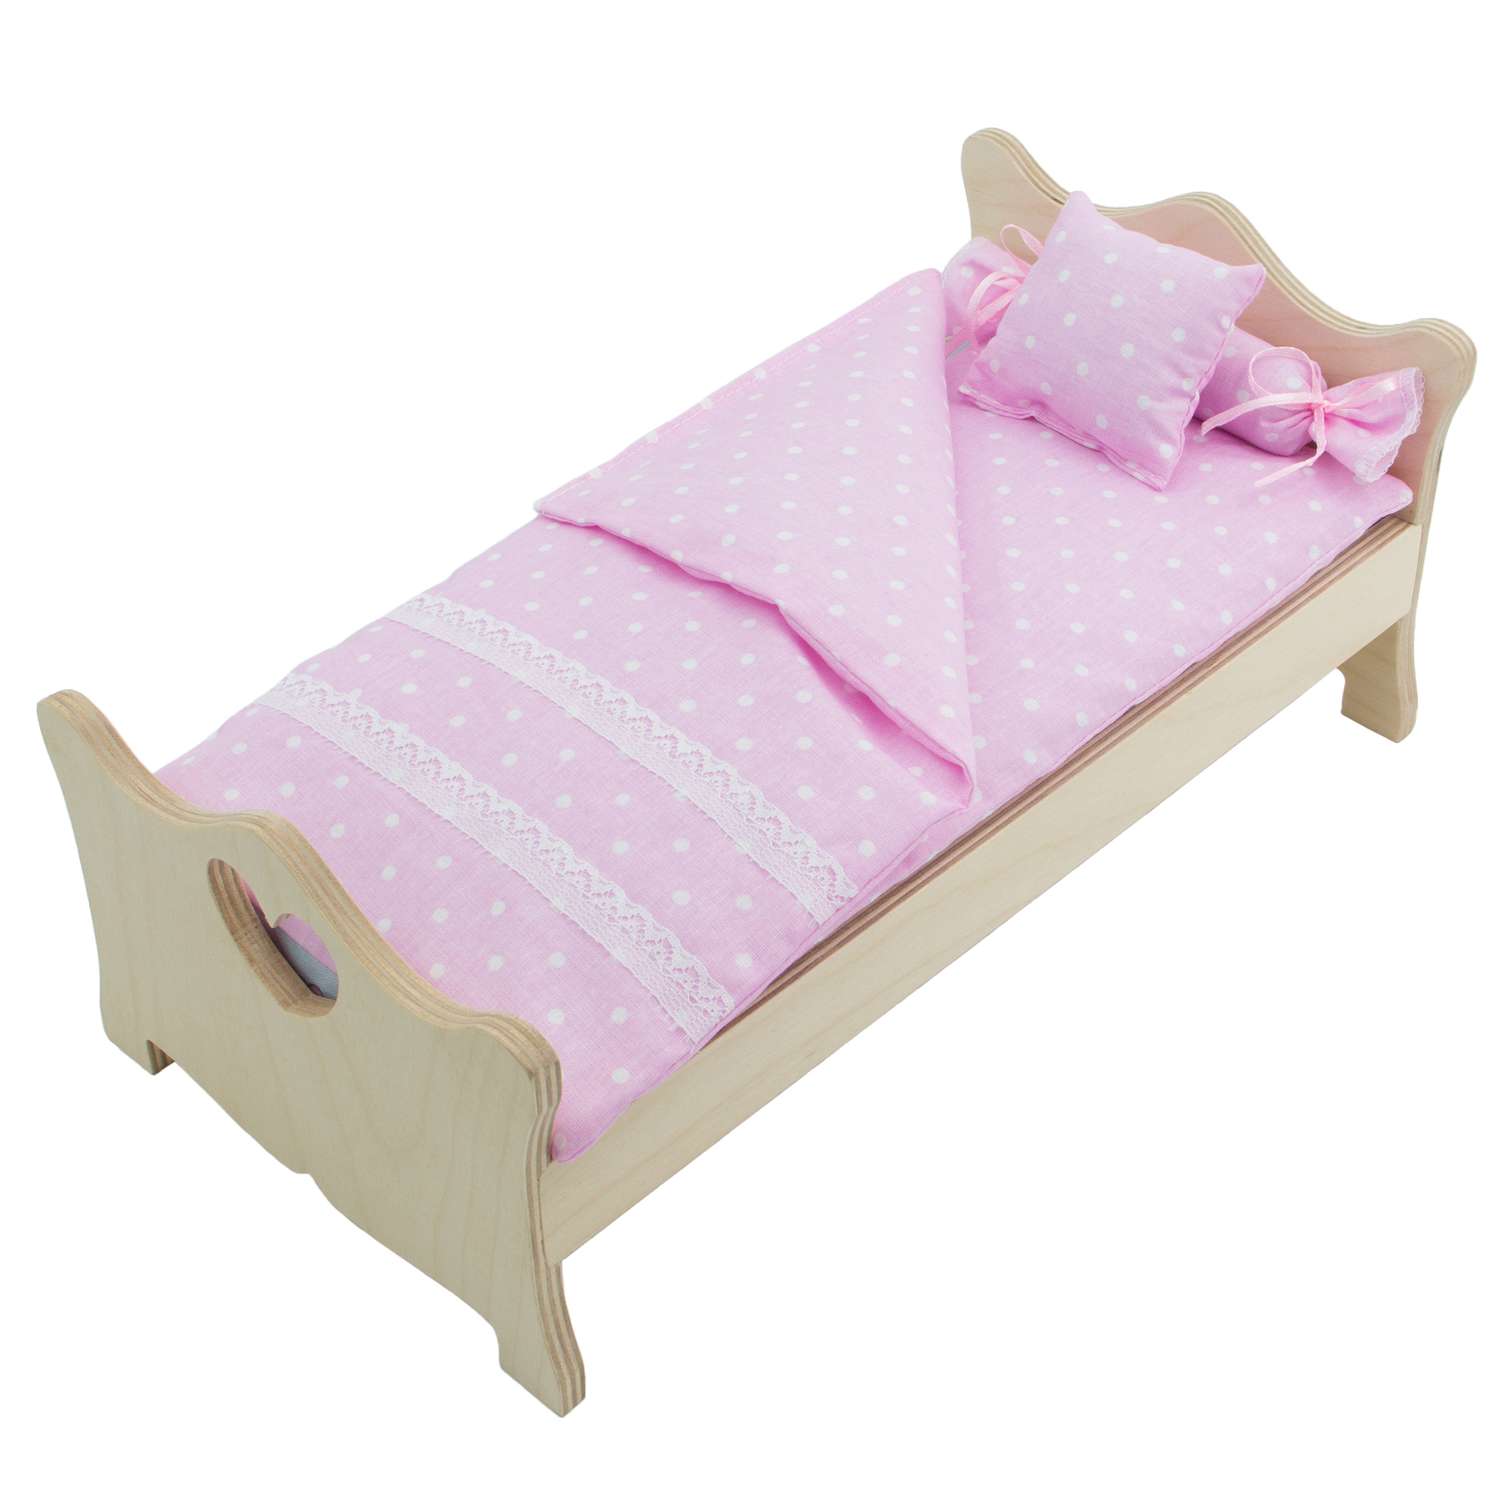 Комлпект постельного белья Модница для куклы 29 см пастельно-розовый 2002пастельно-розовый - фото 3